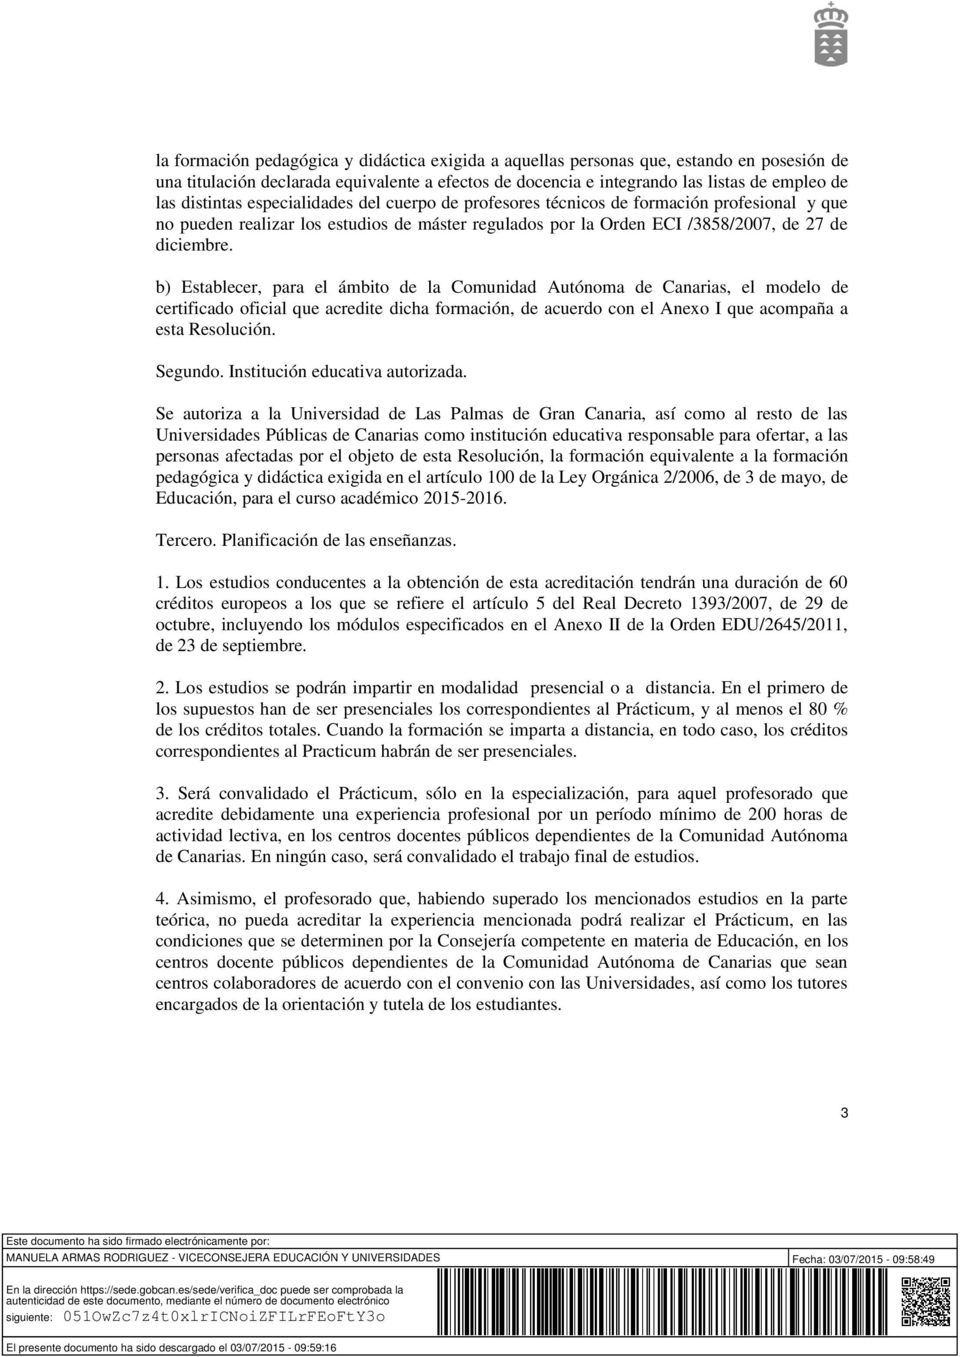 b) Establecer, para el ámbito de la Comunidad Autónoma de Canarias, el modelo de certificado oficial que acredite dicha formación, de acuerdo con el Anexo I que acompaña a esta Resolución. Segundo.